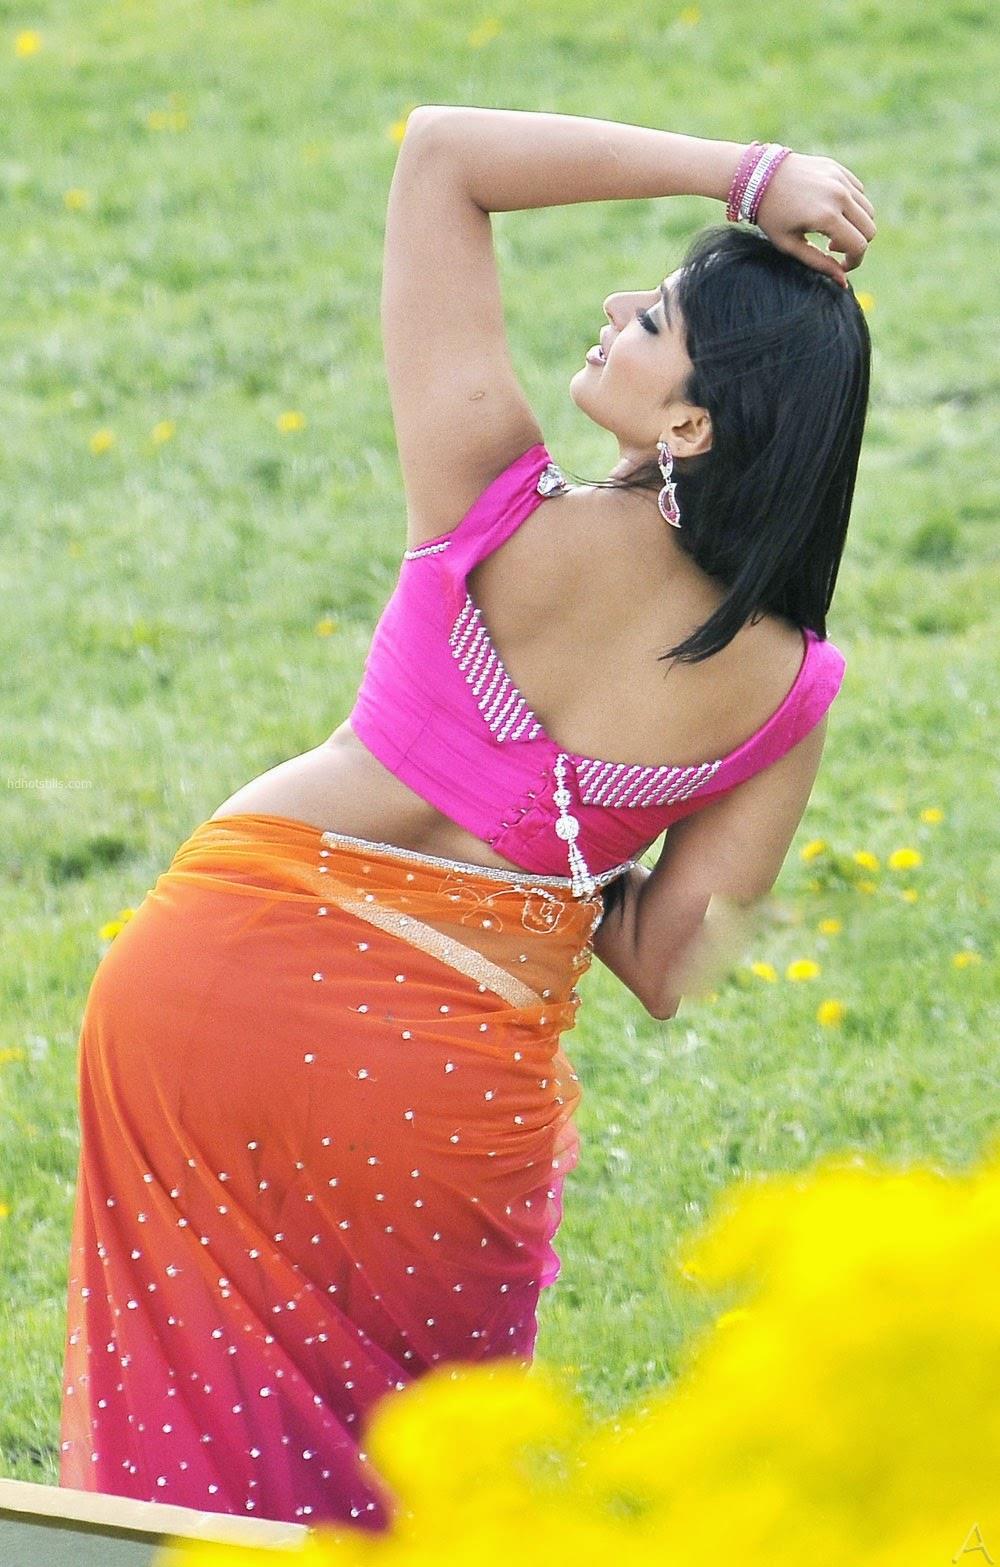 Telugu Actress Anushka Shetty Hot Back Photos Indian Actress Wallpapers Photos And Movie Stills